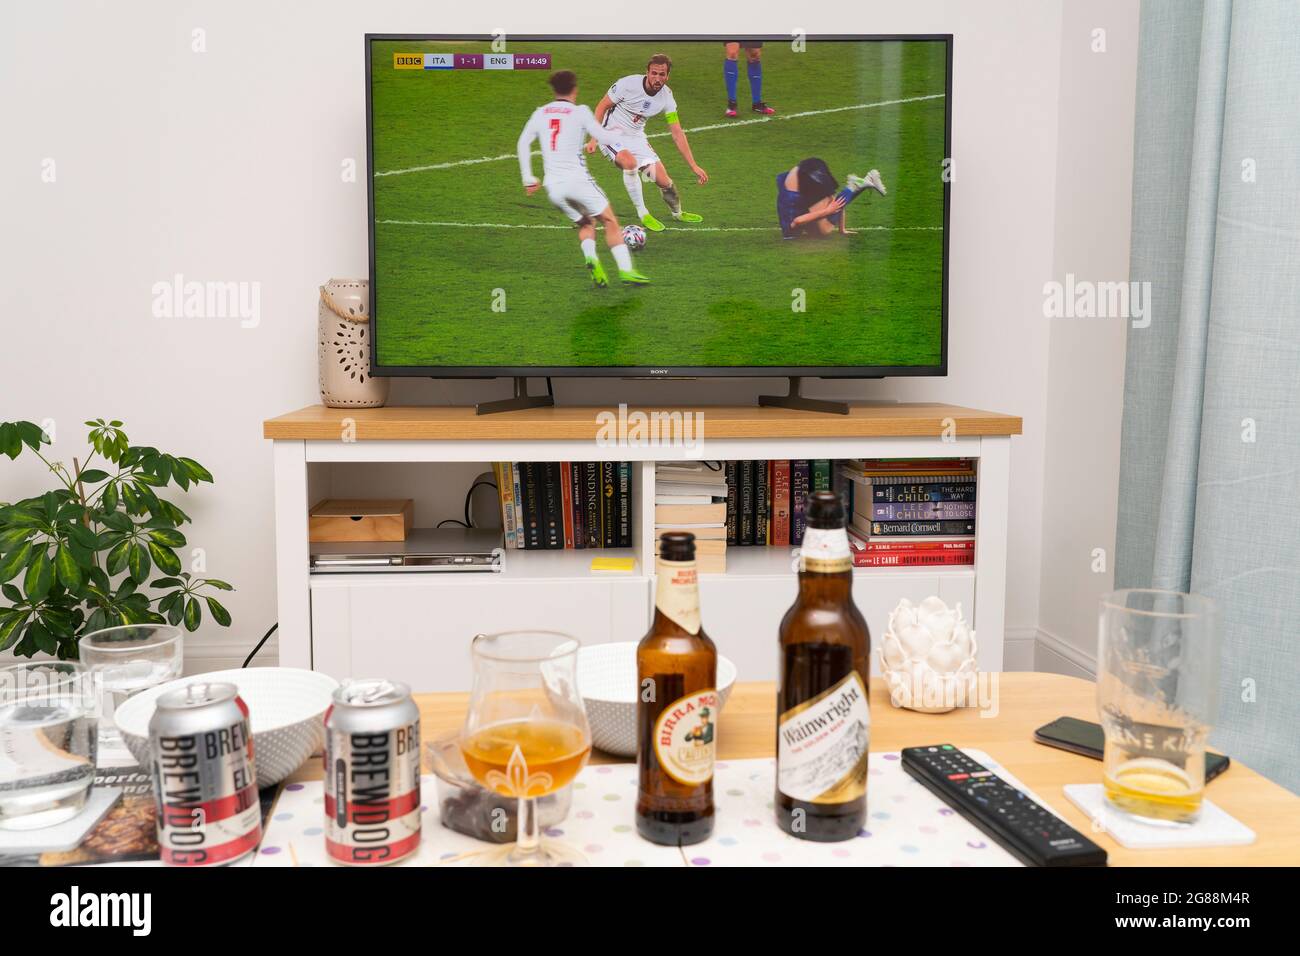 un televisore widescreen che mostra Harry Kane sulla palla durante la finale della competizione calcistica UEFA Euro 2020 con Inghilterra e Italia, con birre sul tavolo. REGNO UNITO Foto Stock